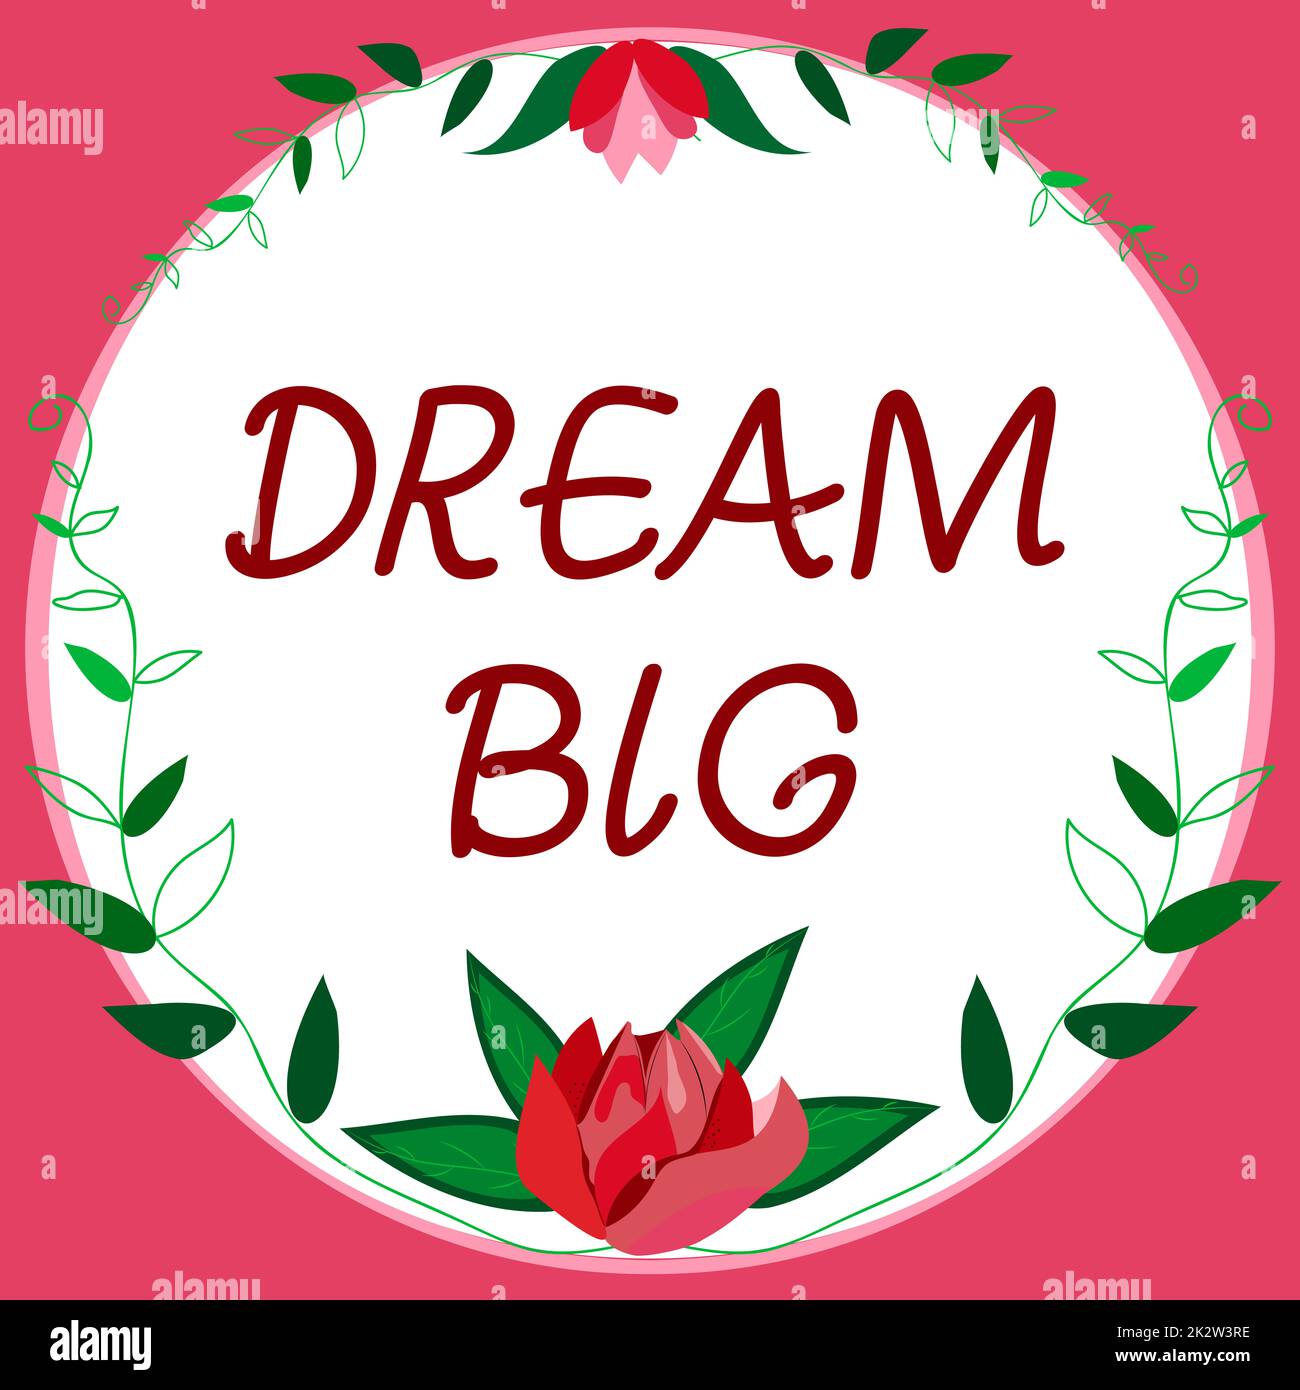 Textbeschriftung für Dream Big. Geschäftsüberblick, um sich etwas Wertvolles zu überlegen, das Sie erreichen möchten Rahmen dekoriert mit farbenfrohen Blumen und Blattwerk harmonisch angeordnet. Stockfoto